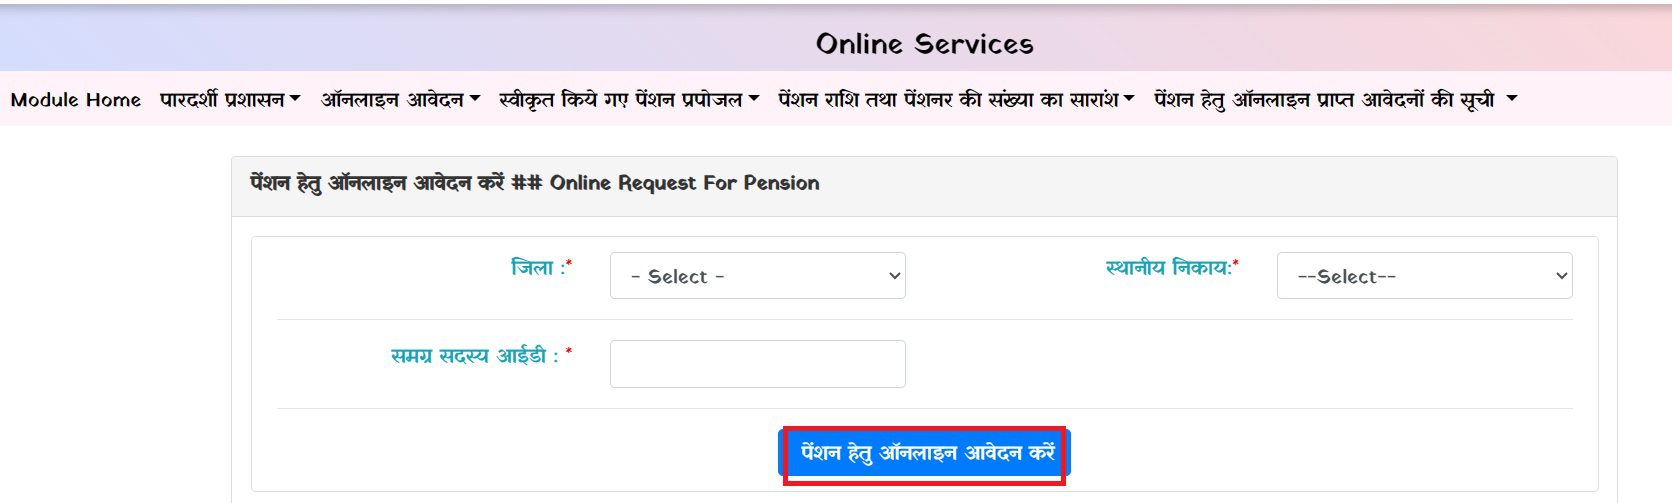 Mp Avivahit pension application form